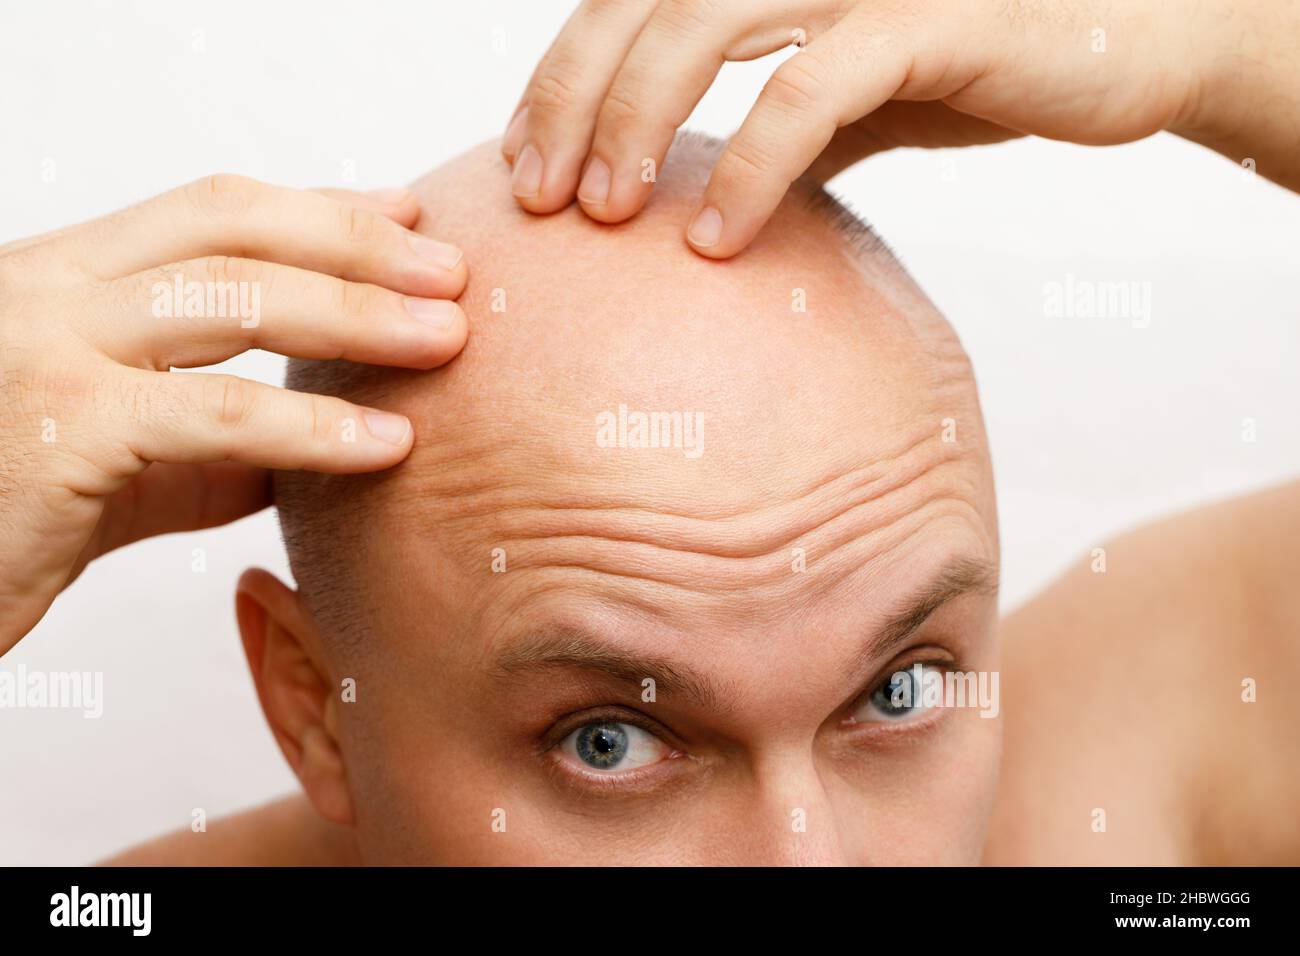 La testa di un baldante. Un uomo calvo era sconvolto a causa della perdita dei capelli. Trattamento della calvizie. Foto Stock